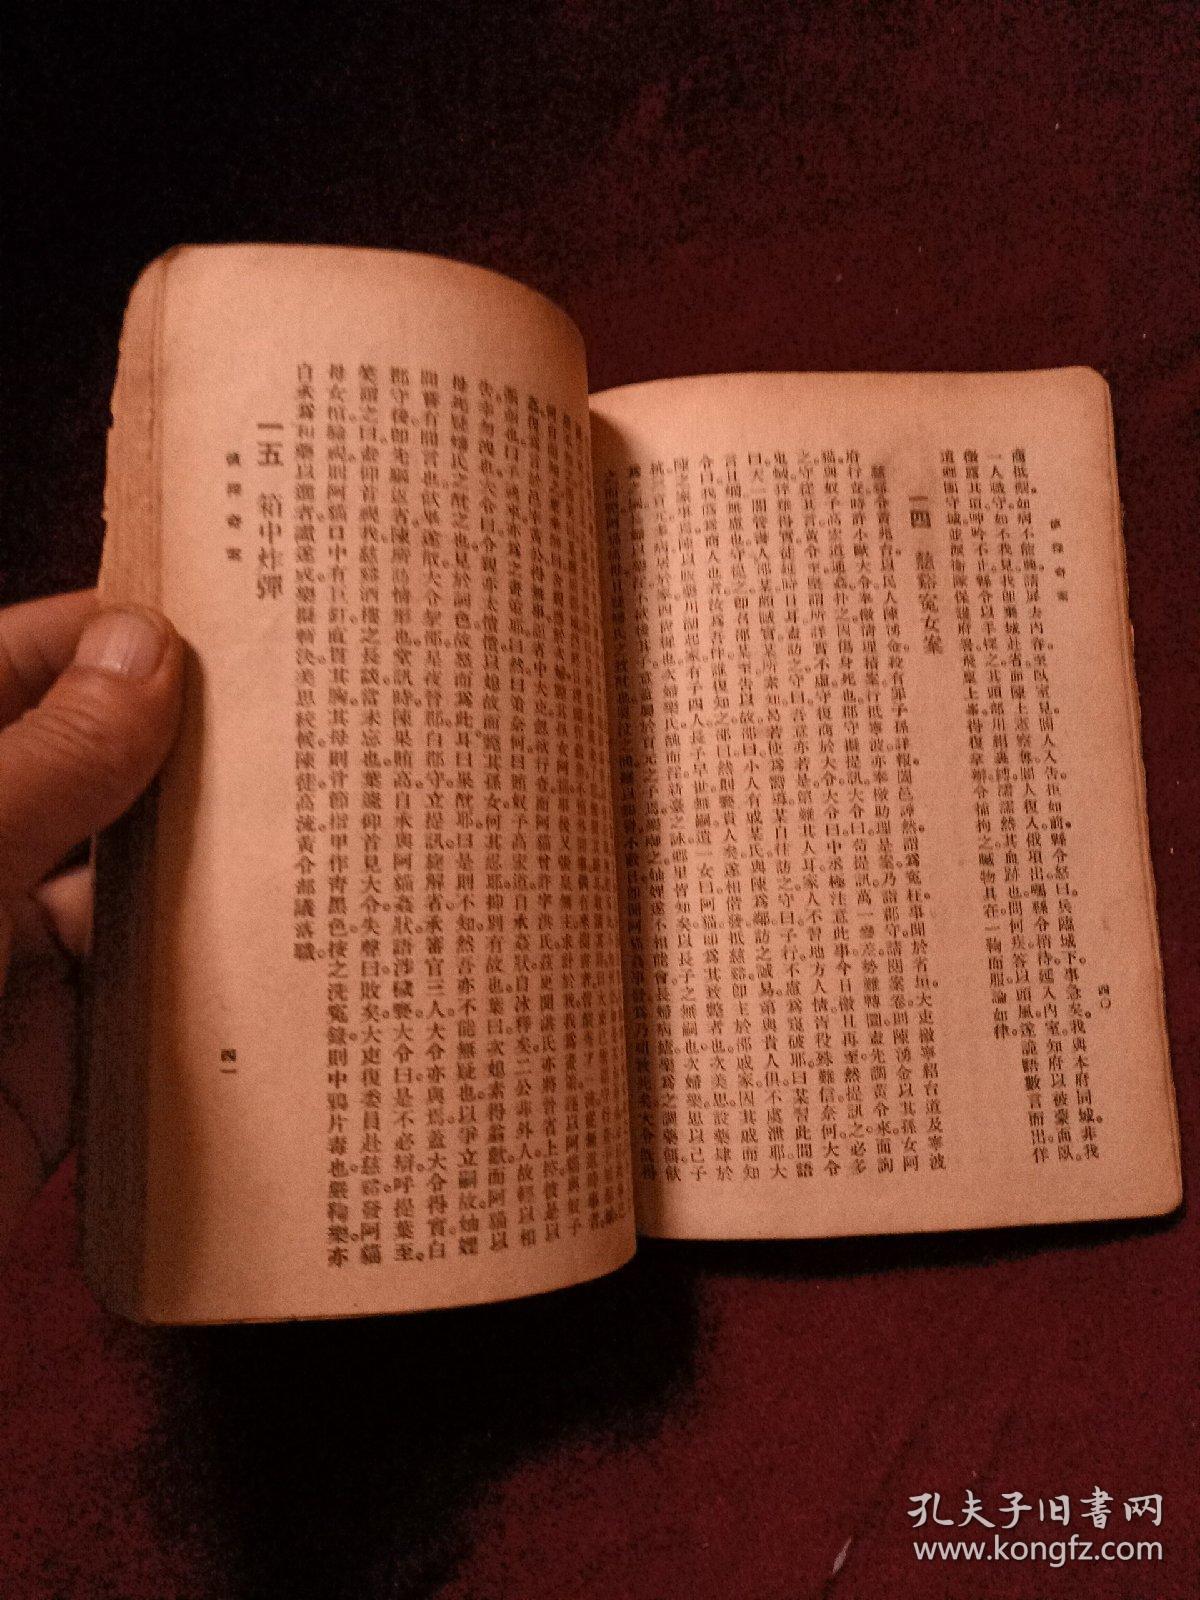 中国侦探奇案(民国时期出版，竖体)